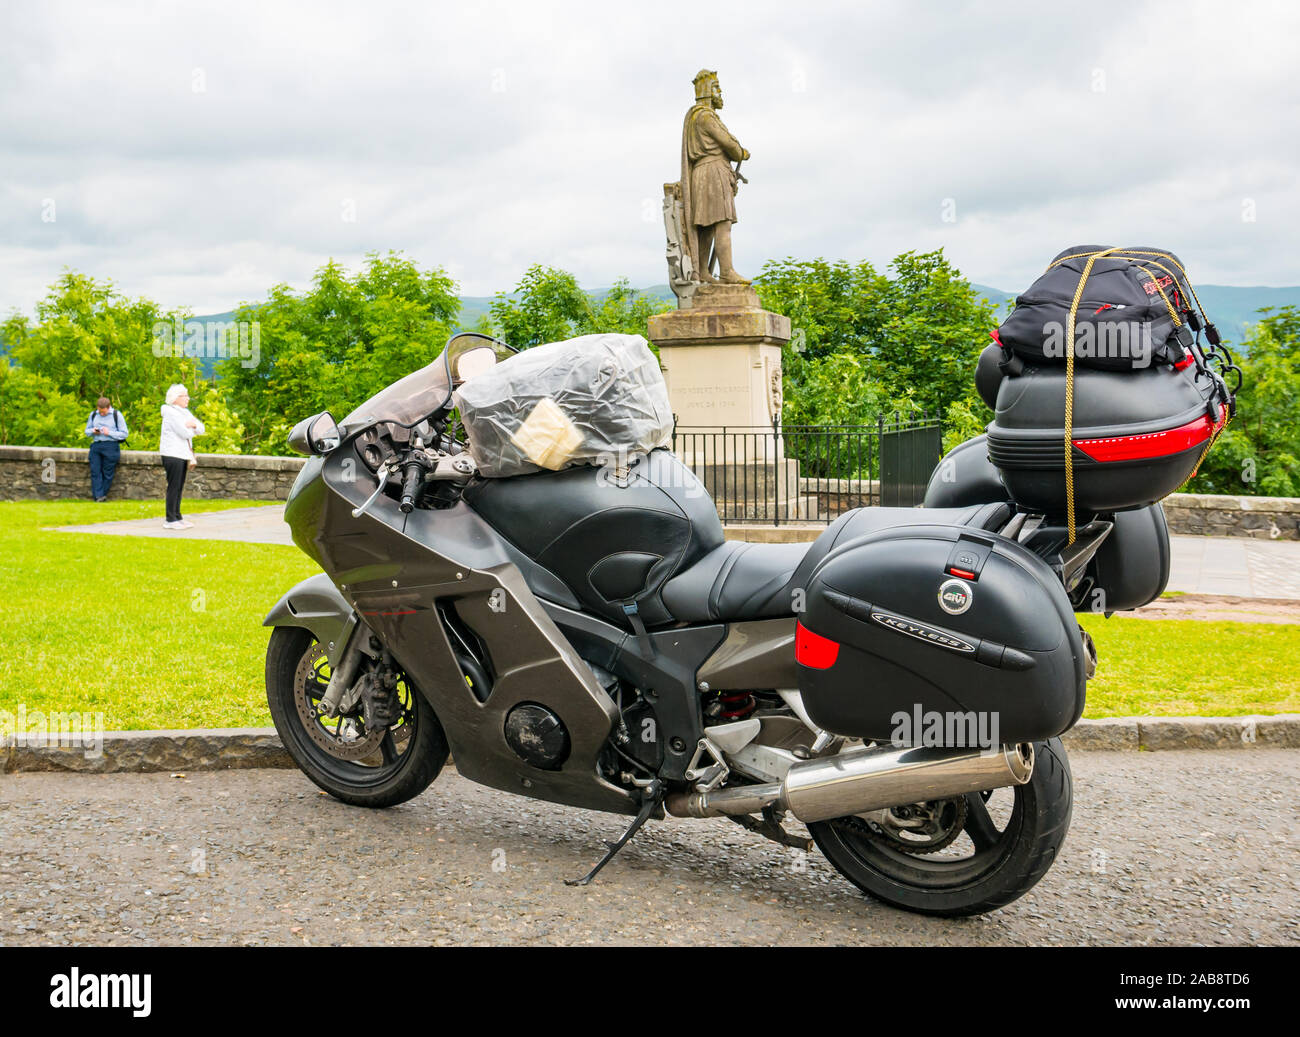 De motos de tourisme garé sur esplanade du château & Rbert la statue de Bruce, le château de Stirling, Scotland, UK Banque D'Images